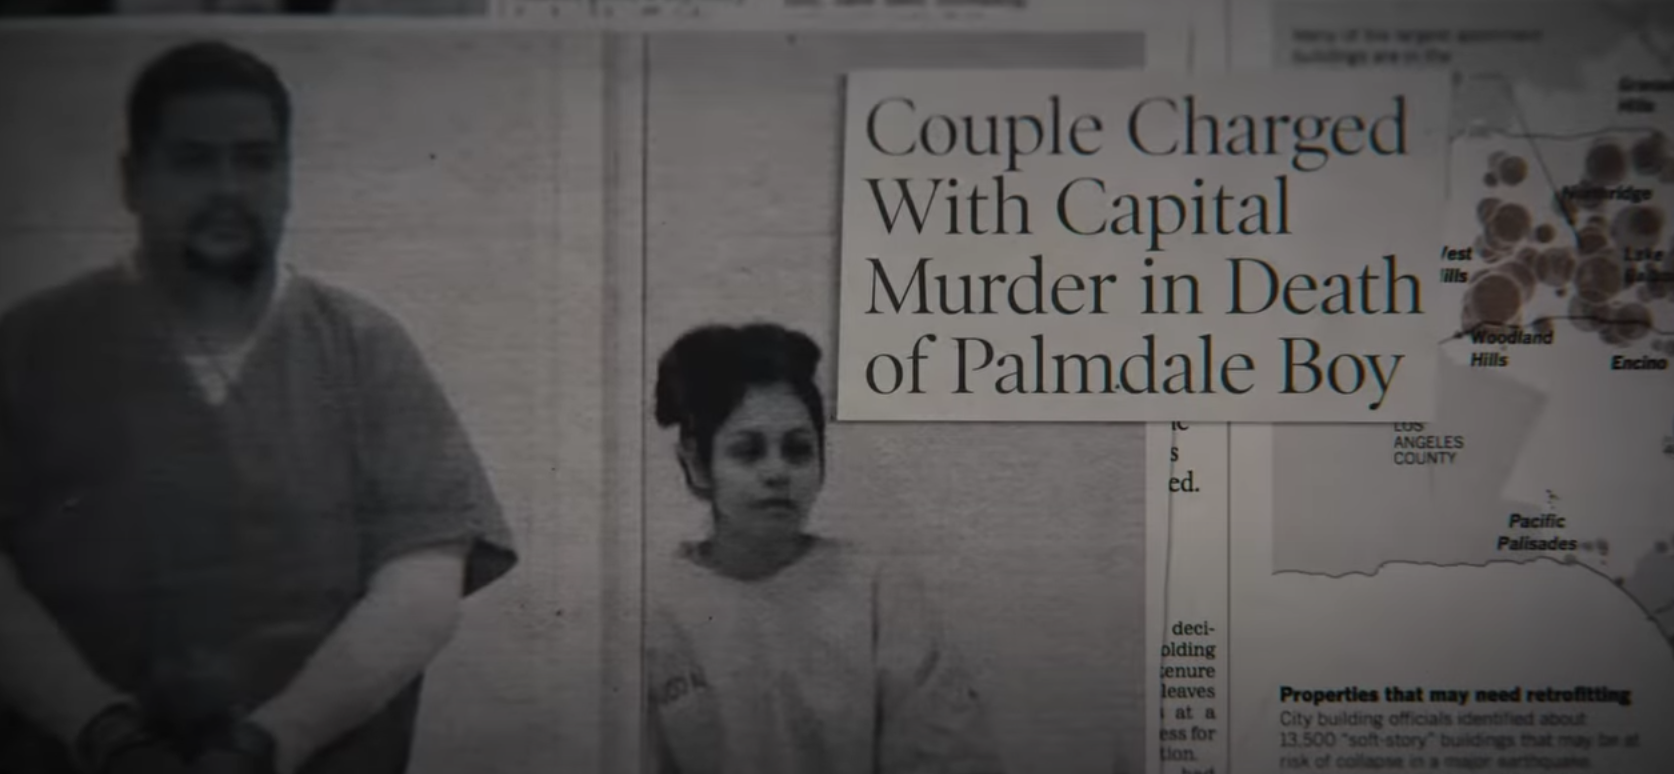 报纸阅读“夫妇被控谋杀罪在棕榈谷boy"死亡;